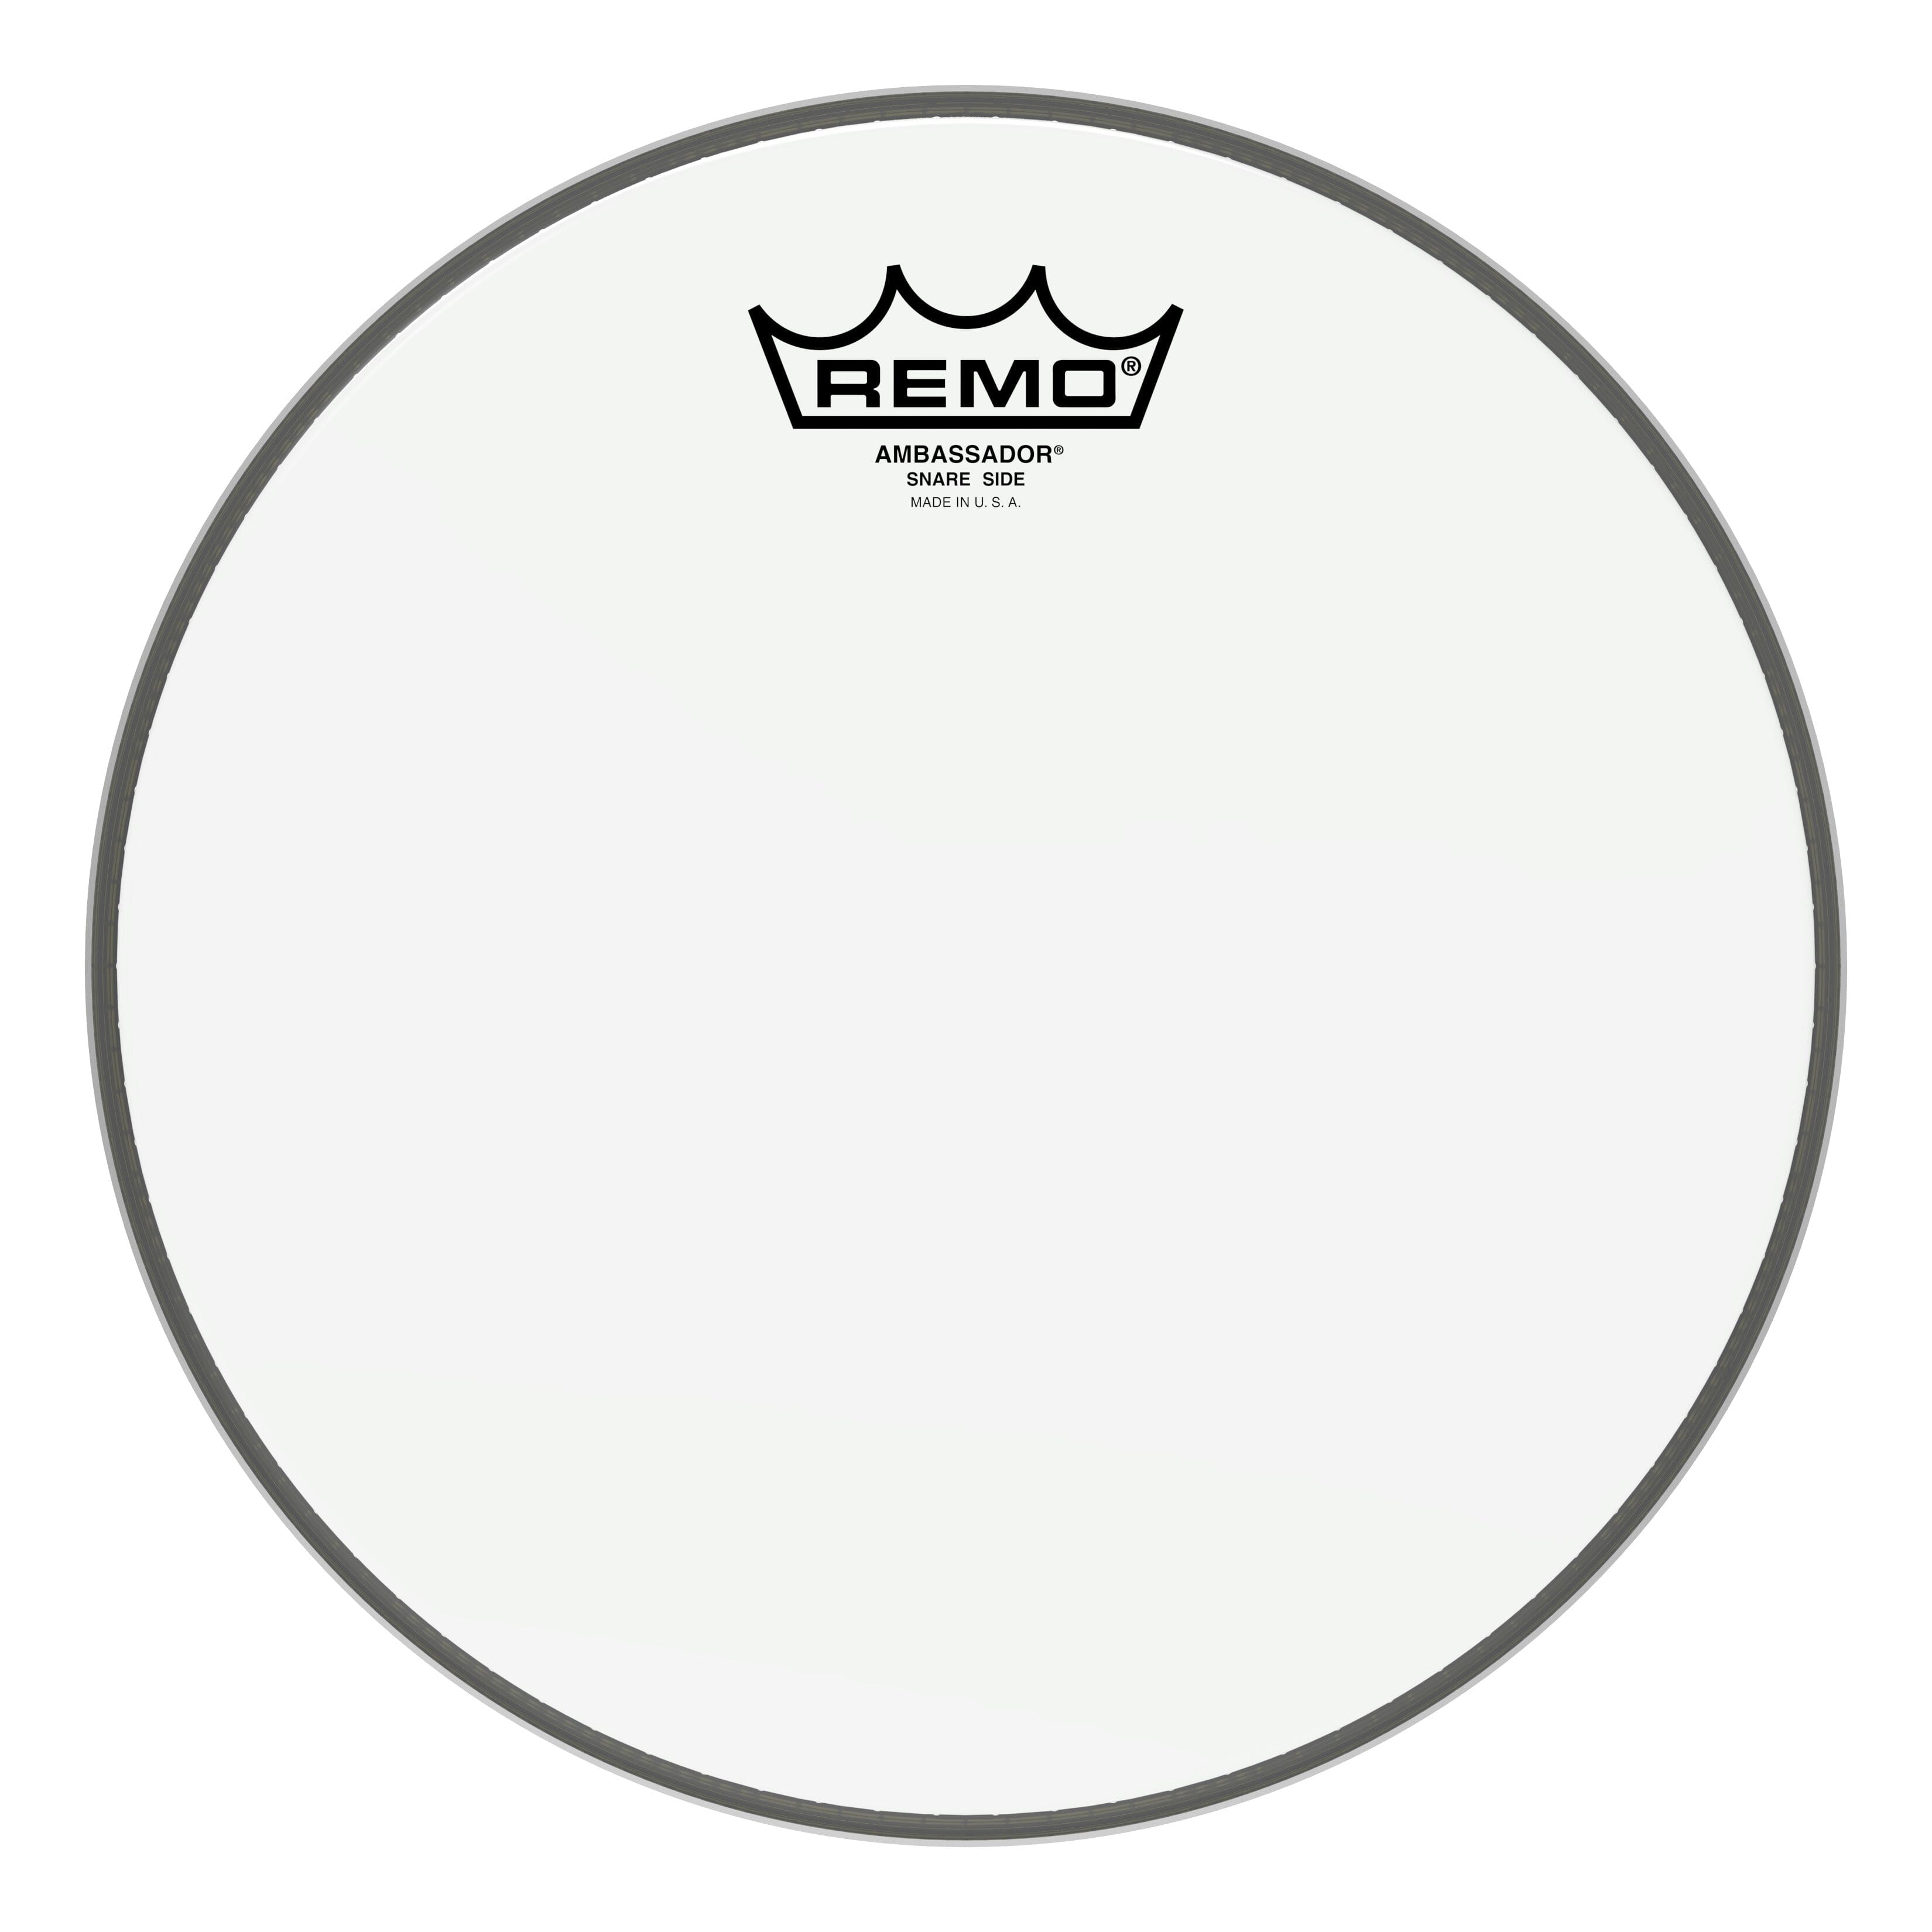 Remo 10" Ambassador Snare Side Drum Head (SA-0110-00) snare side Remo 